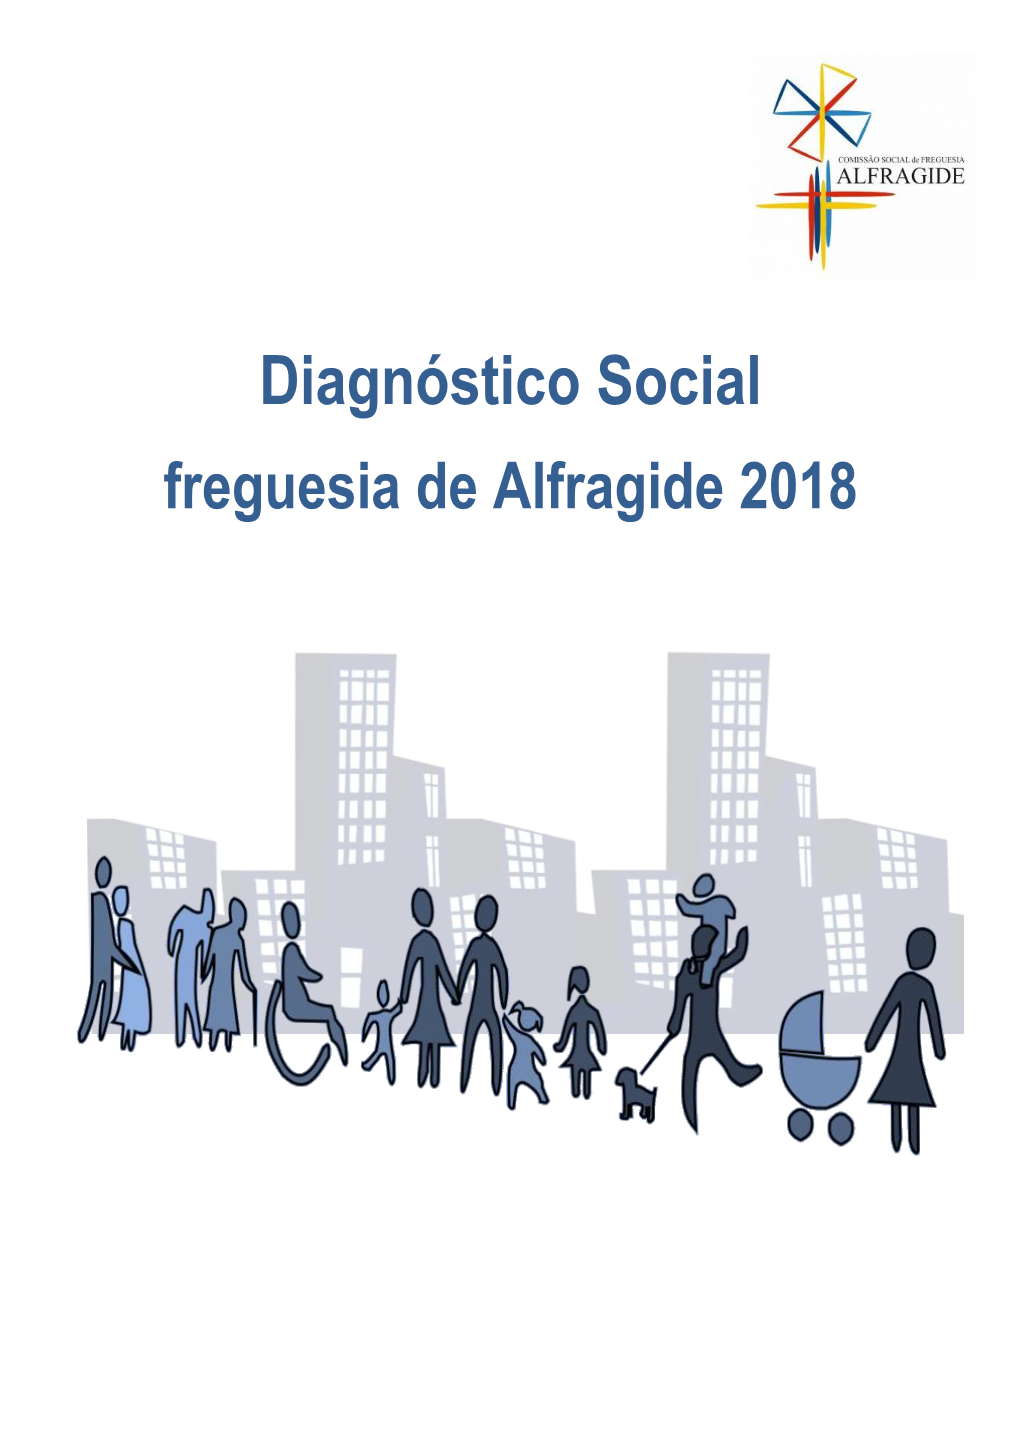 Diagnóstico Social 2018